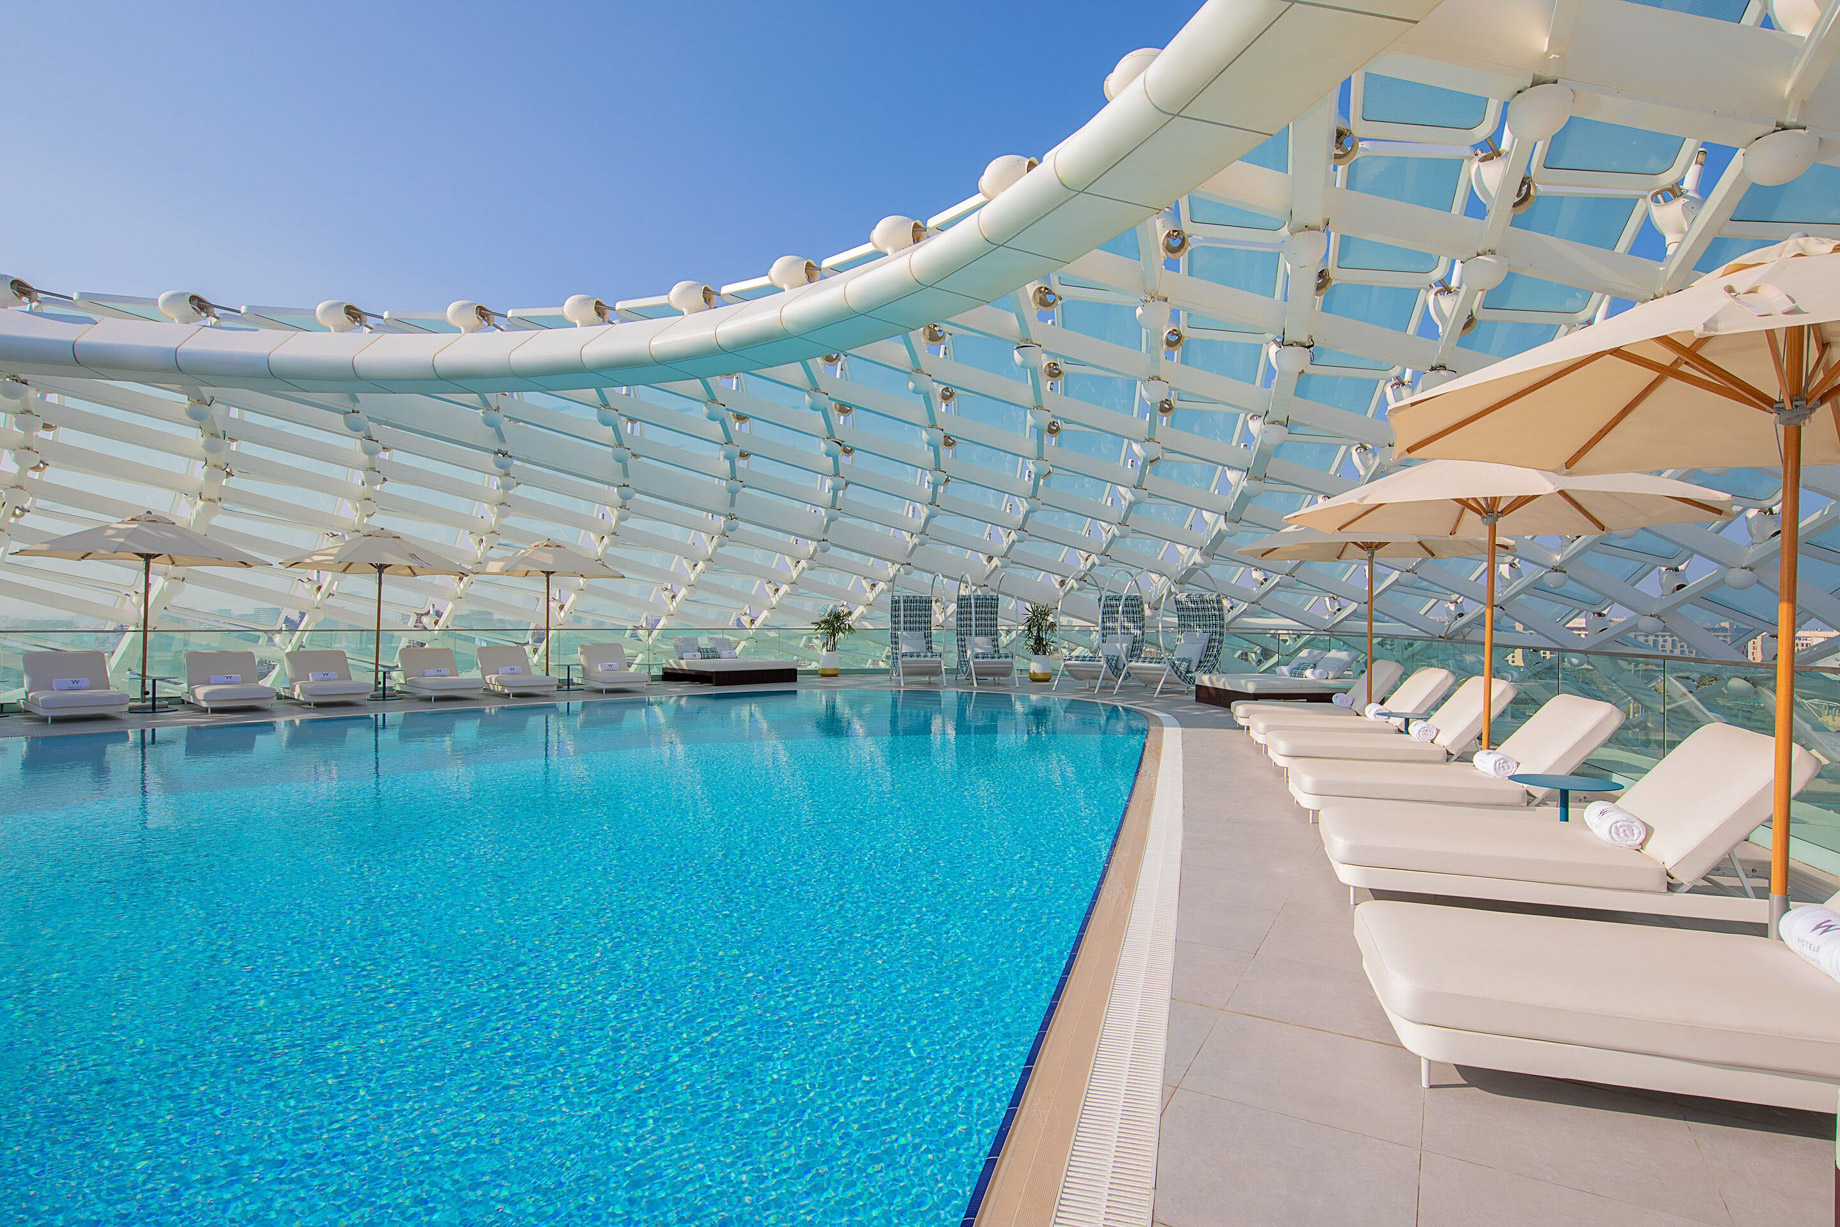 W Abu Dhabi Yas Island Hotel – Abu Dhabi, UAE – WET Deck Pool